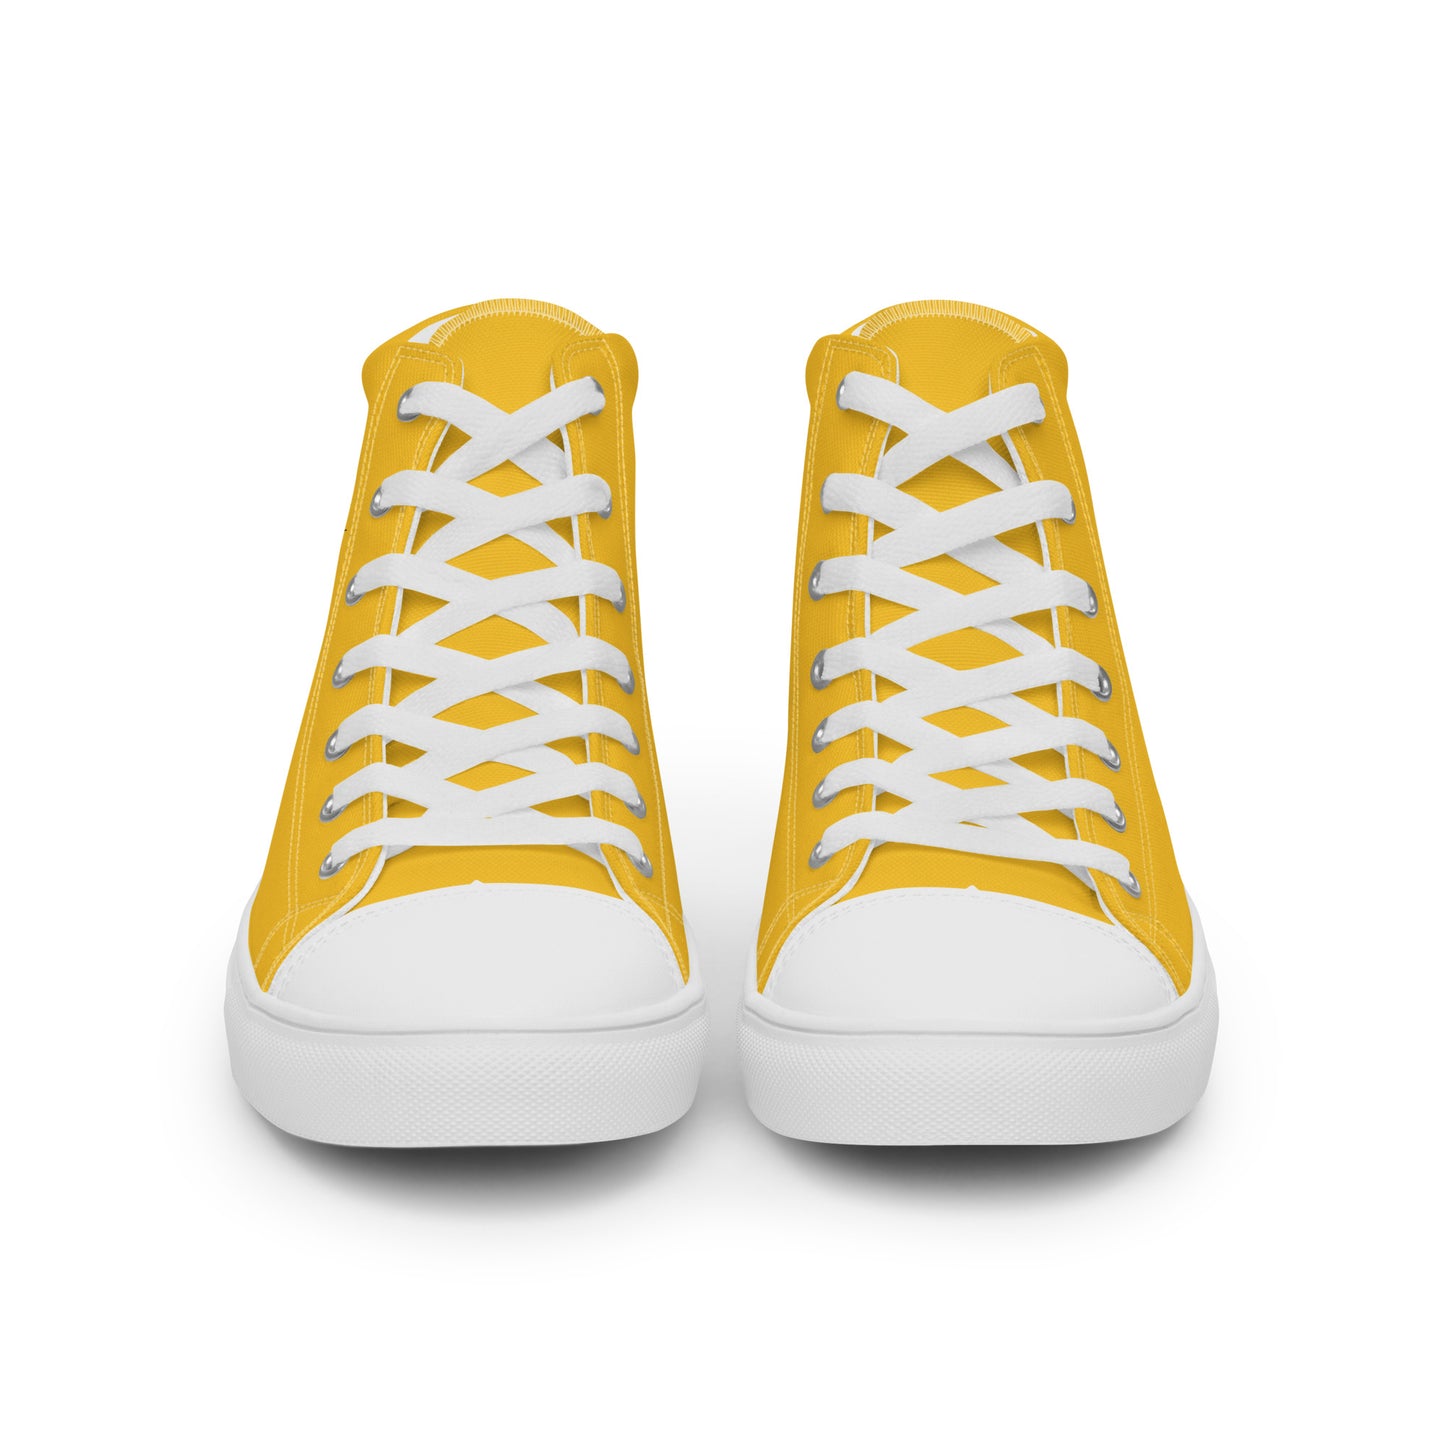 Bolivia - Women - Yellow - High top shoes